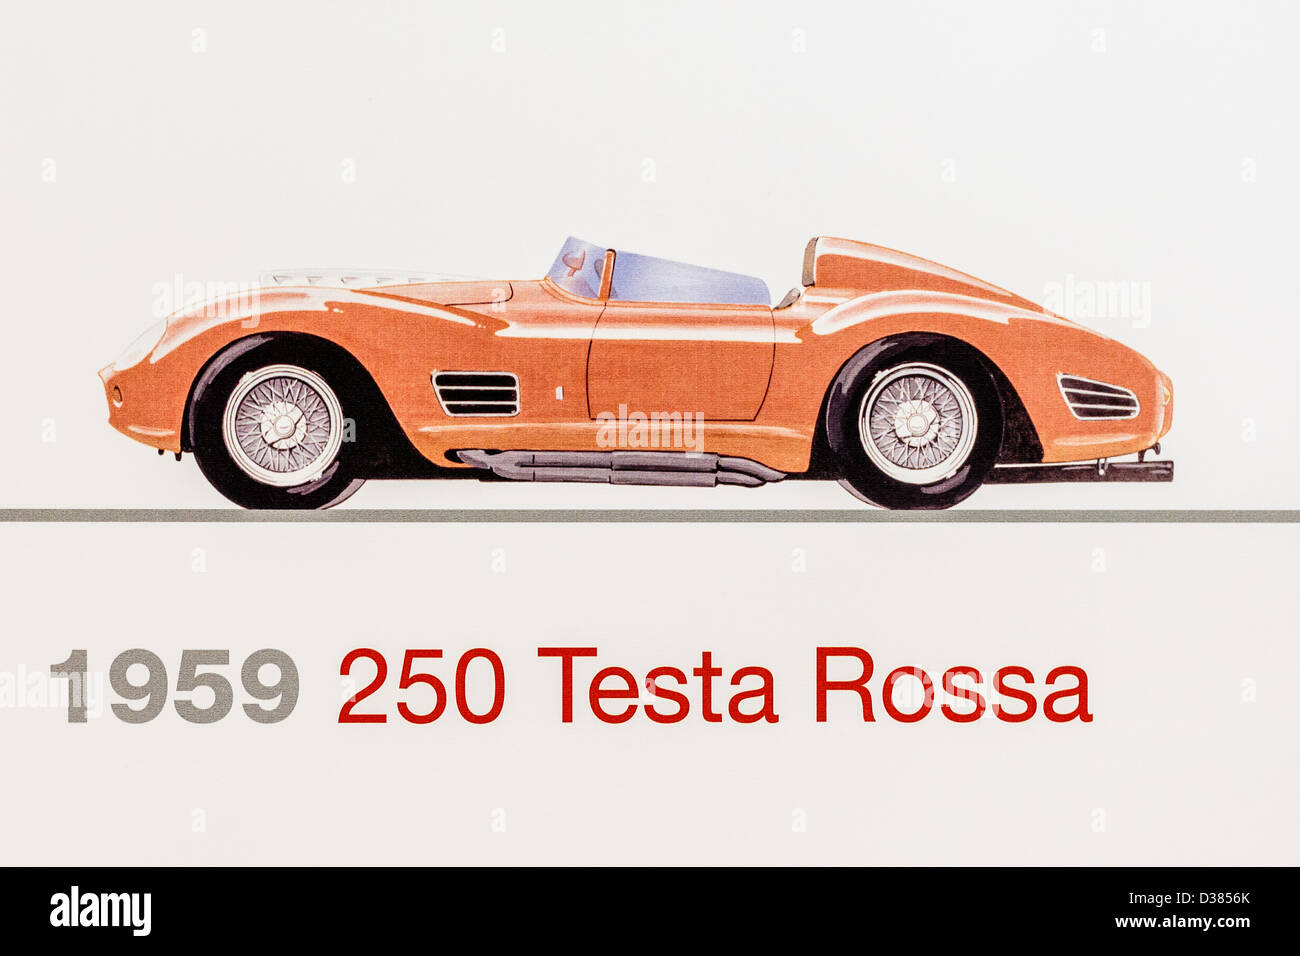 Graphic representation of a 1959 Ferrari 250 Testa Rossa, Ferrari Museum, Maranello, Italy Stock Photo